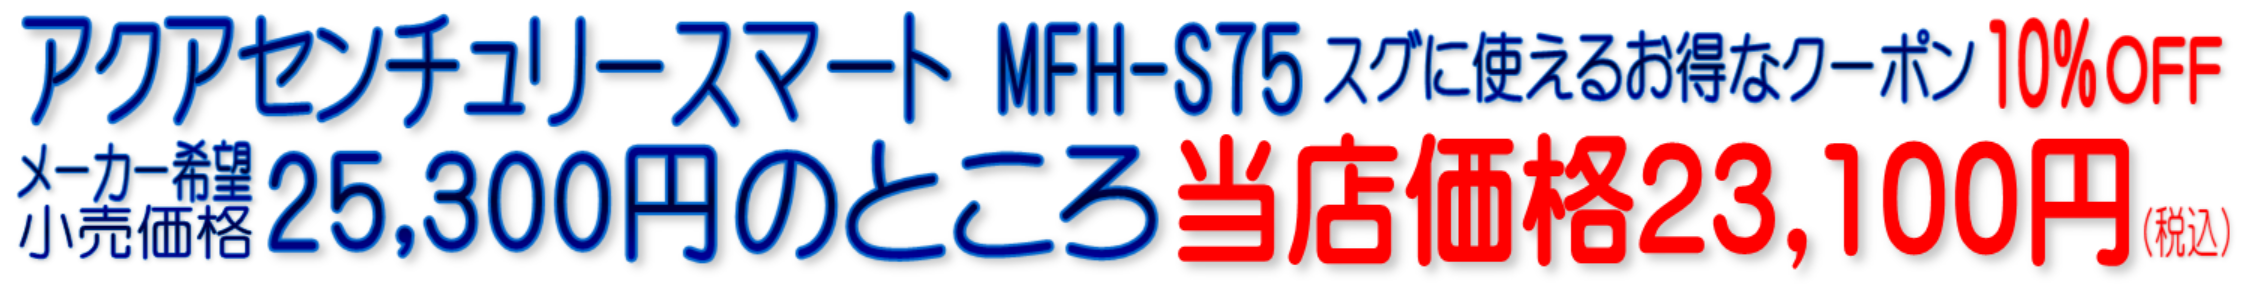 MFH-70